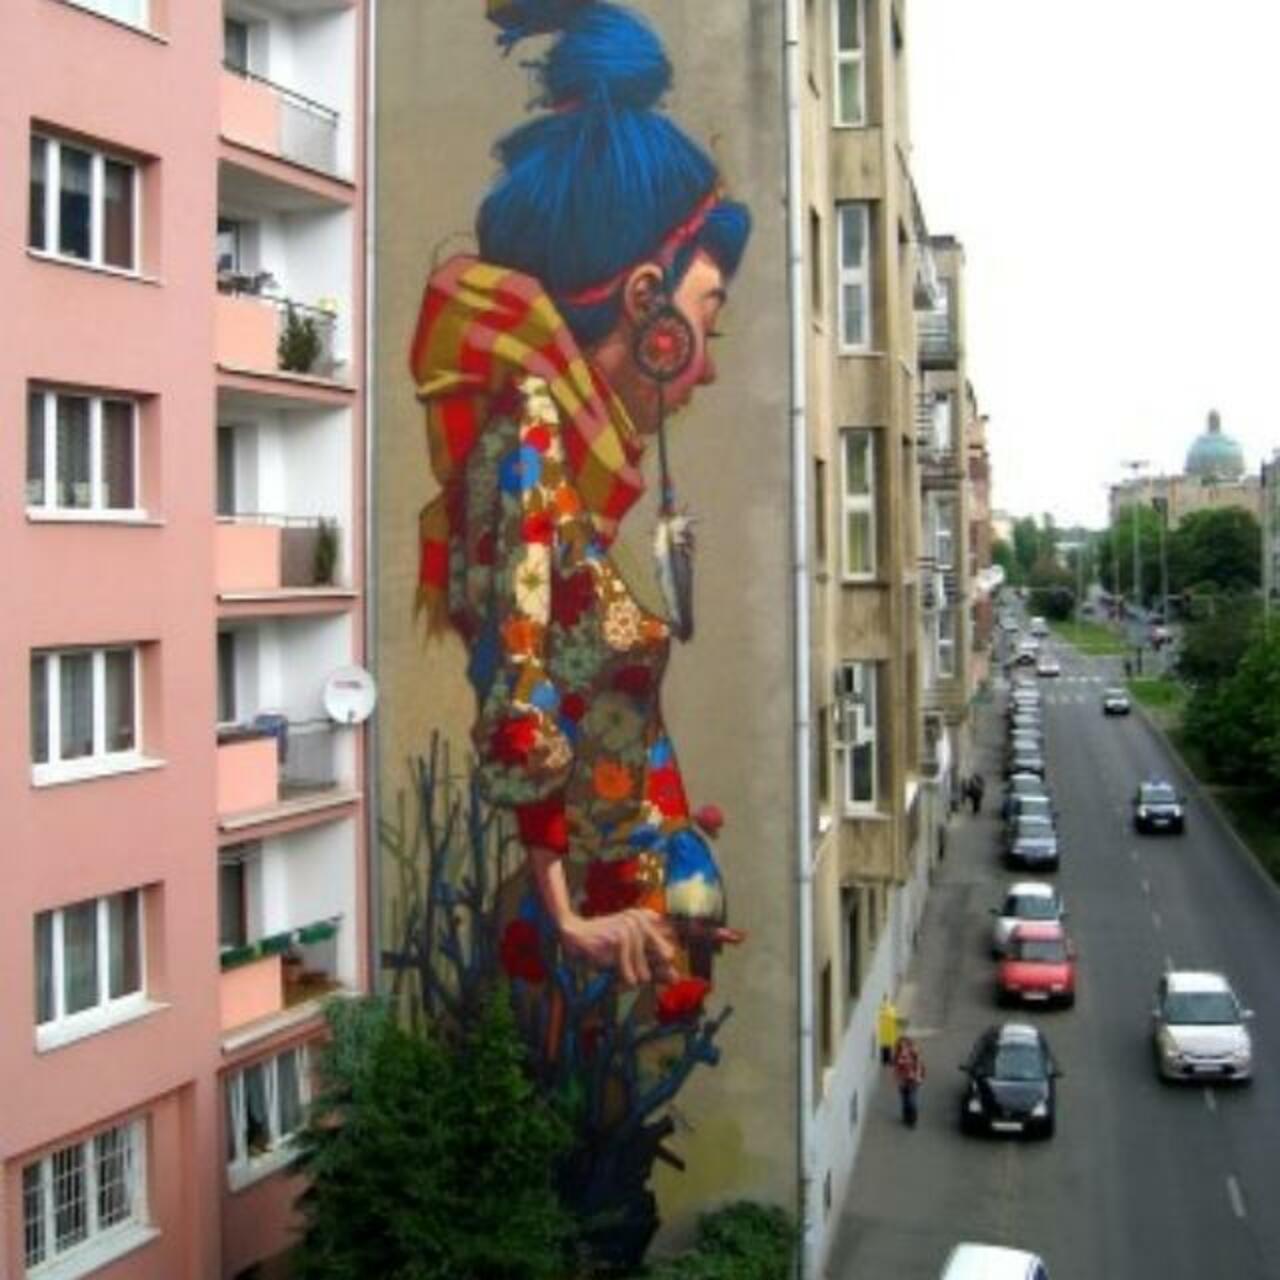 #StreetArt #graffiti POLAND http://t.co/n4nmeDFvKk